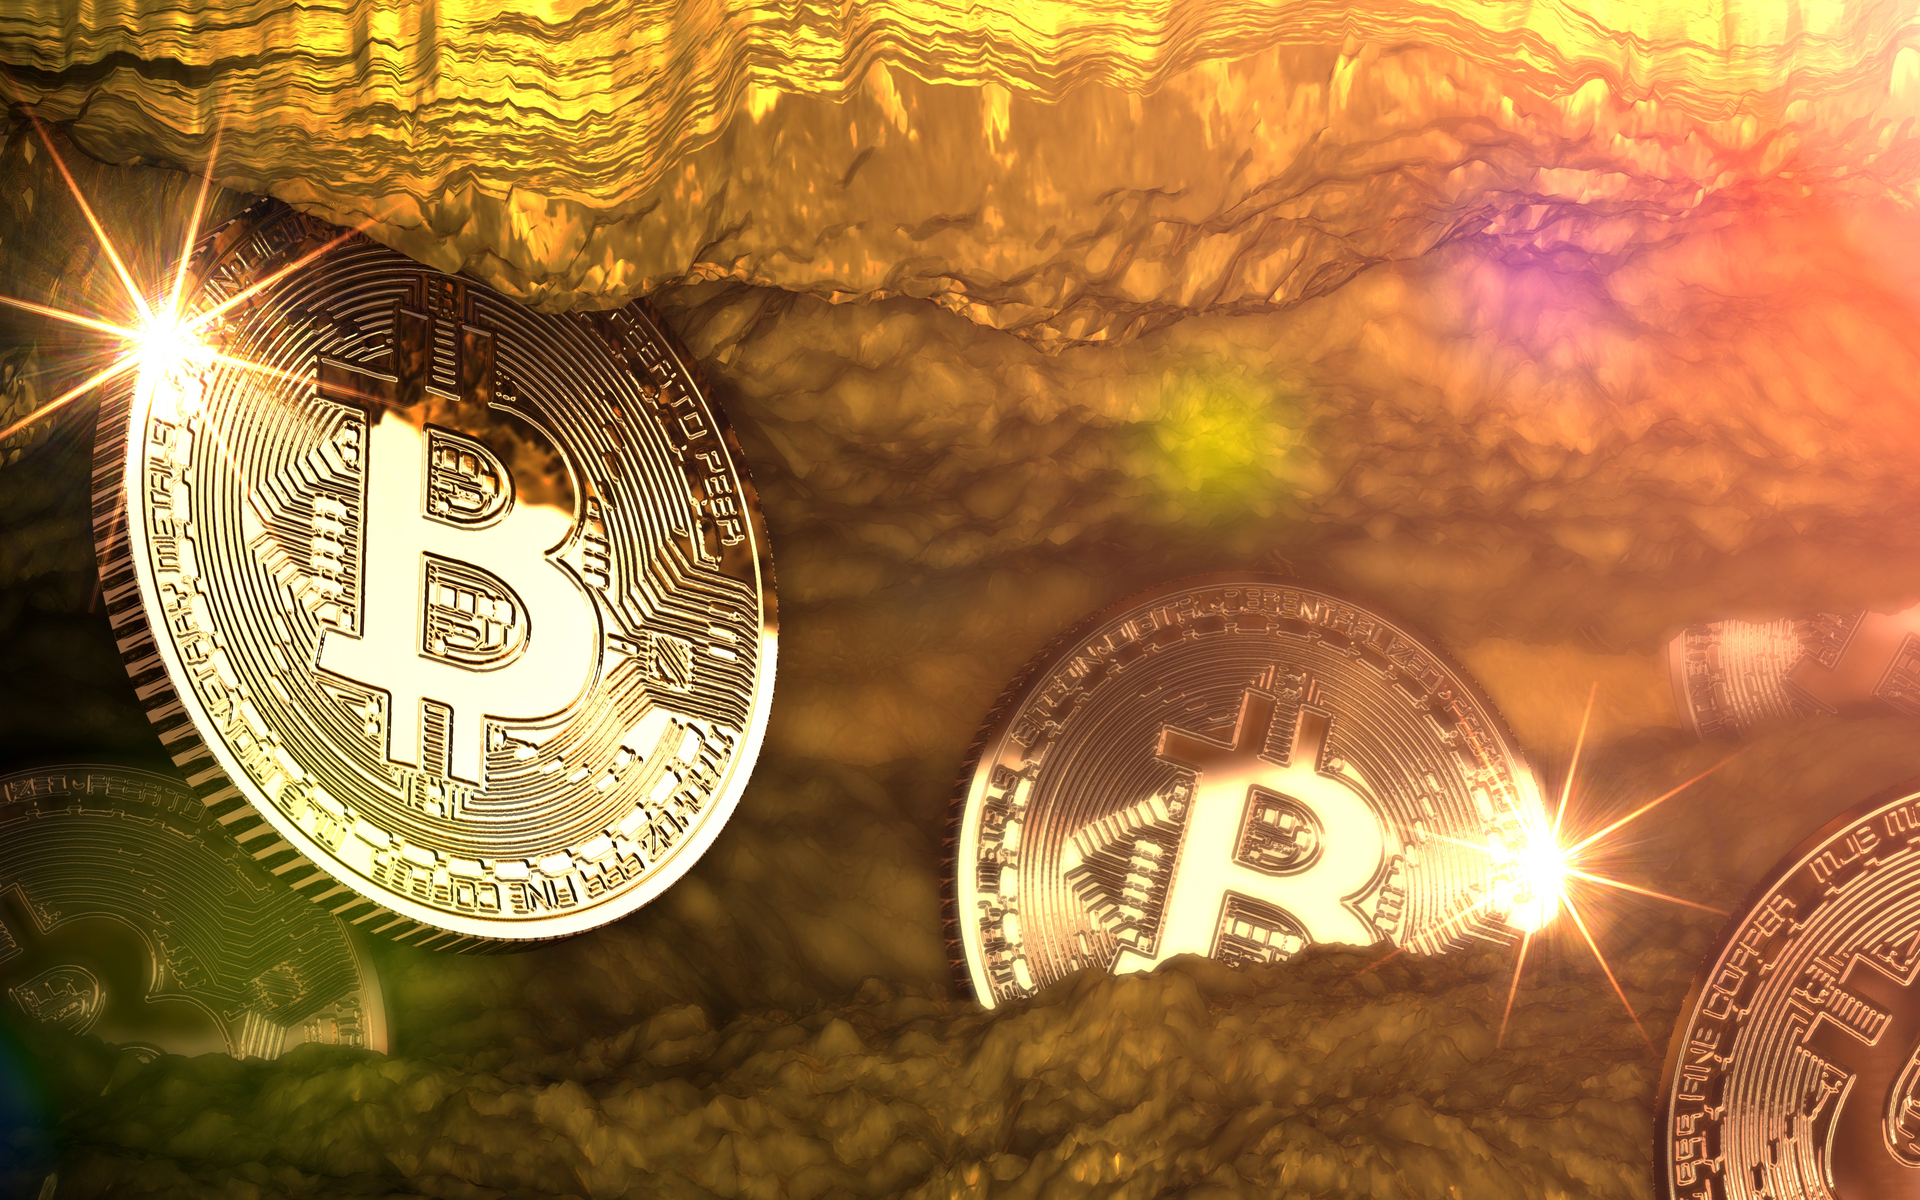 Madoomee bitcoins crypto currency aginast the law in hawaii